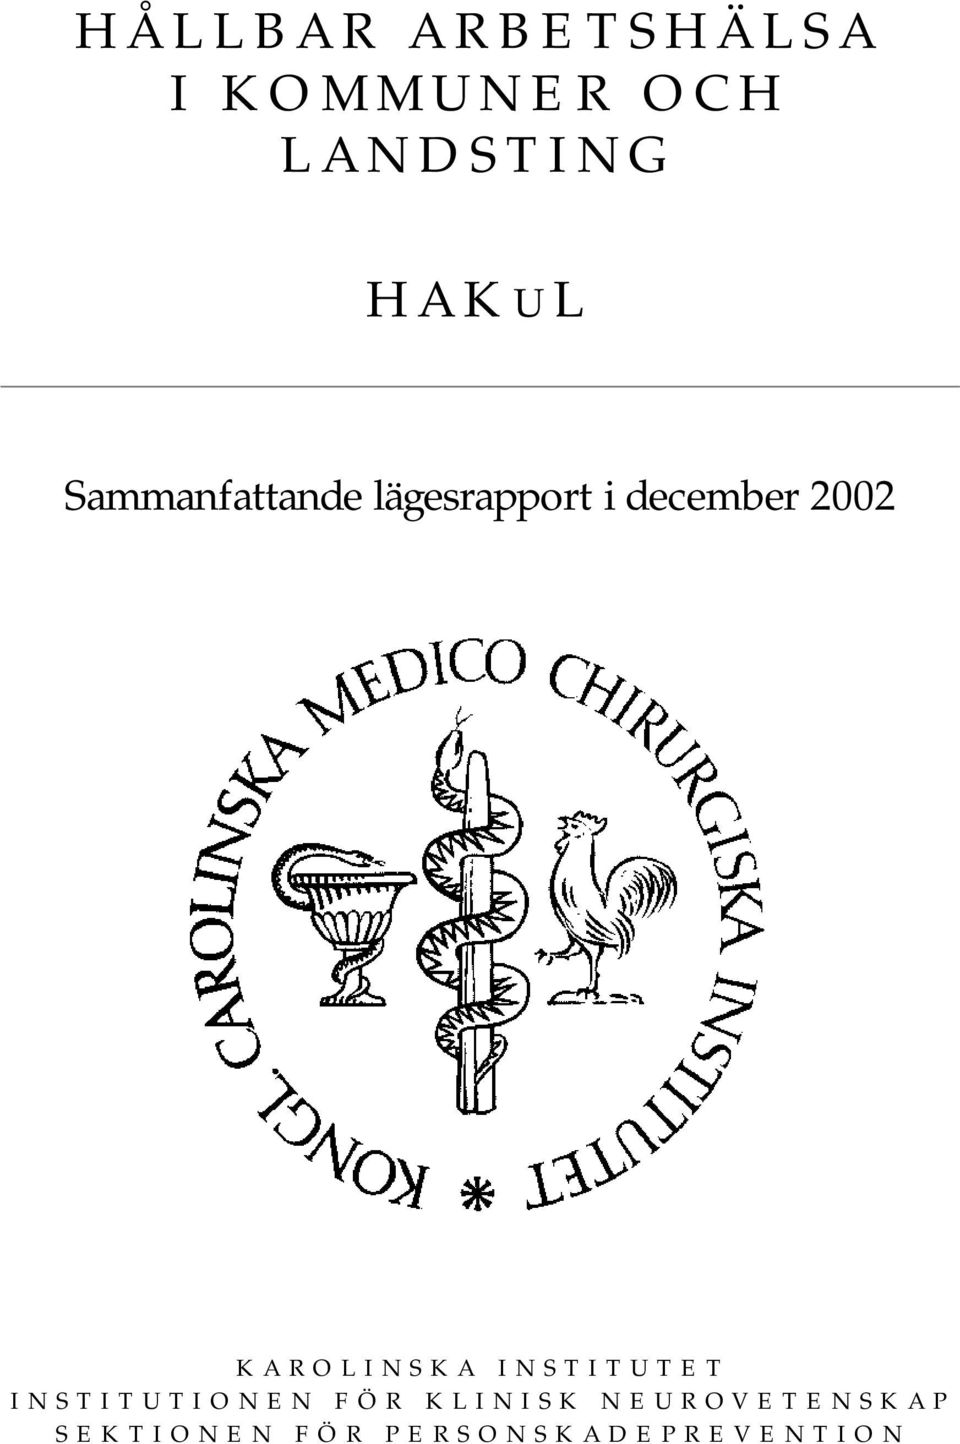 2002 KAROLINSKA INSTITUTET INSTITUTIONEN FÖR